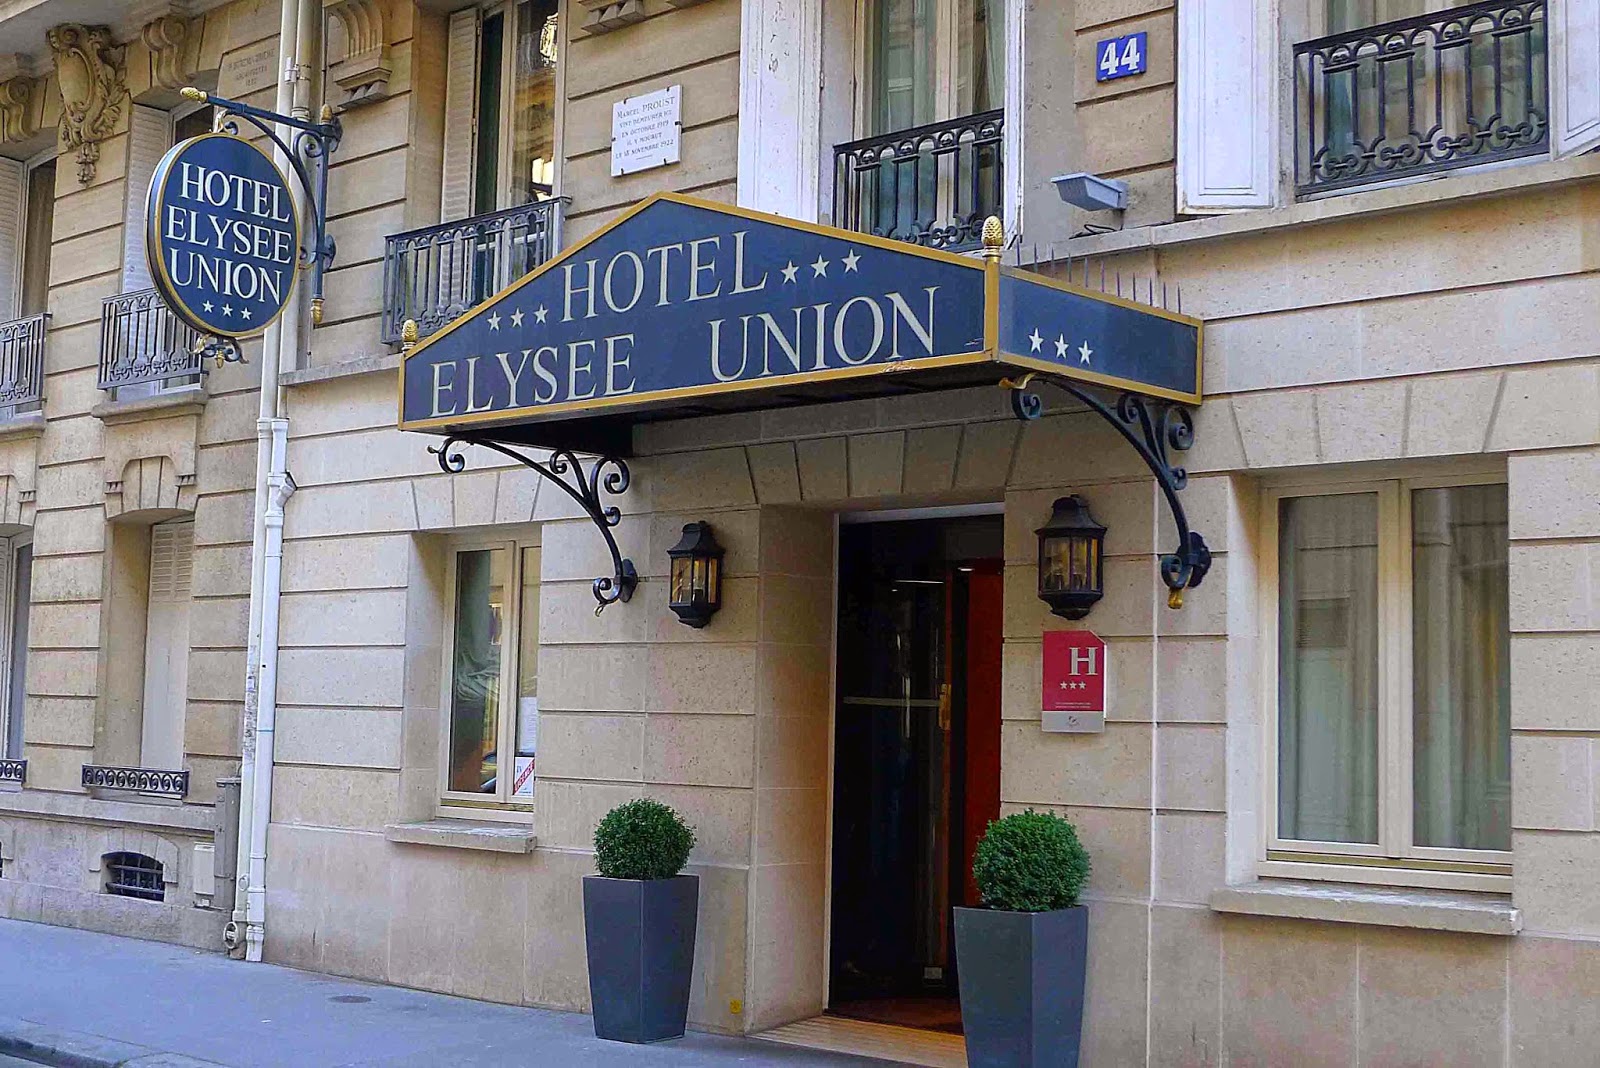 Hotel Elysee Union